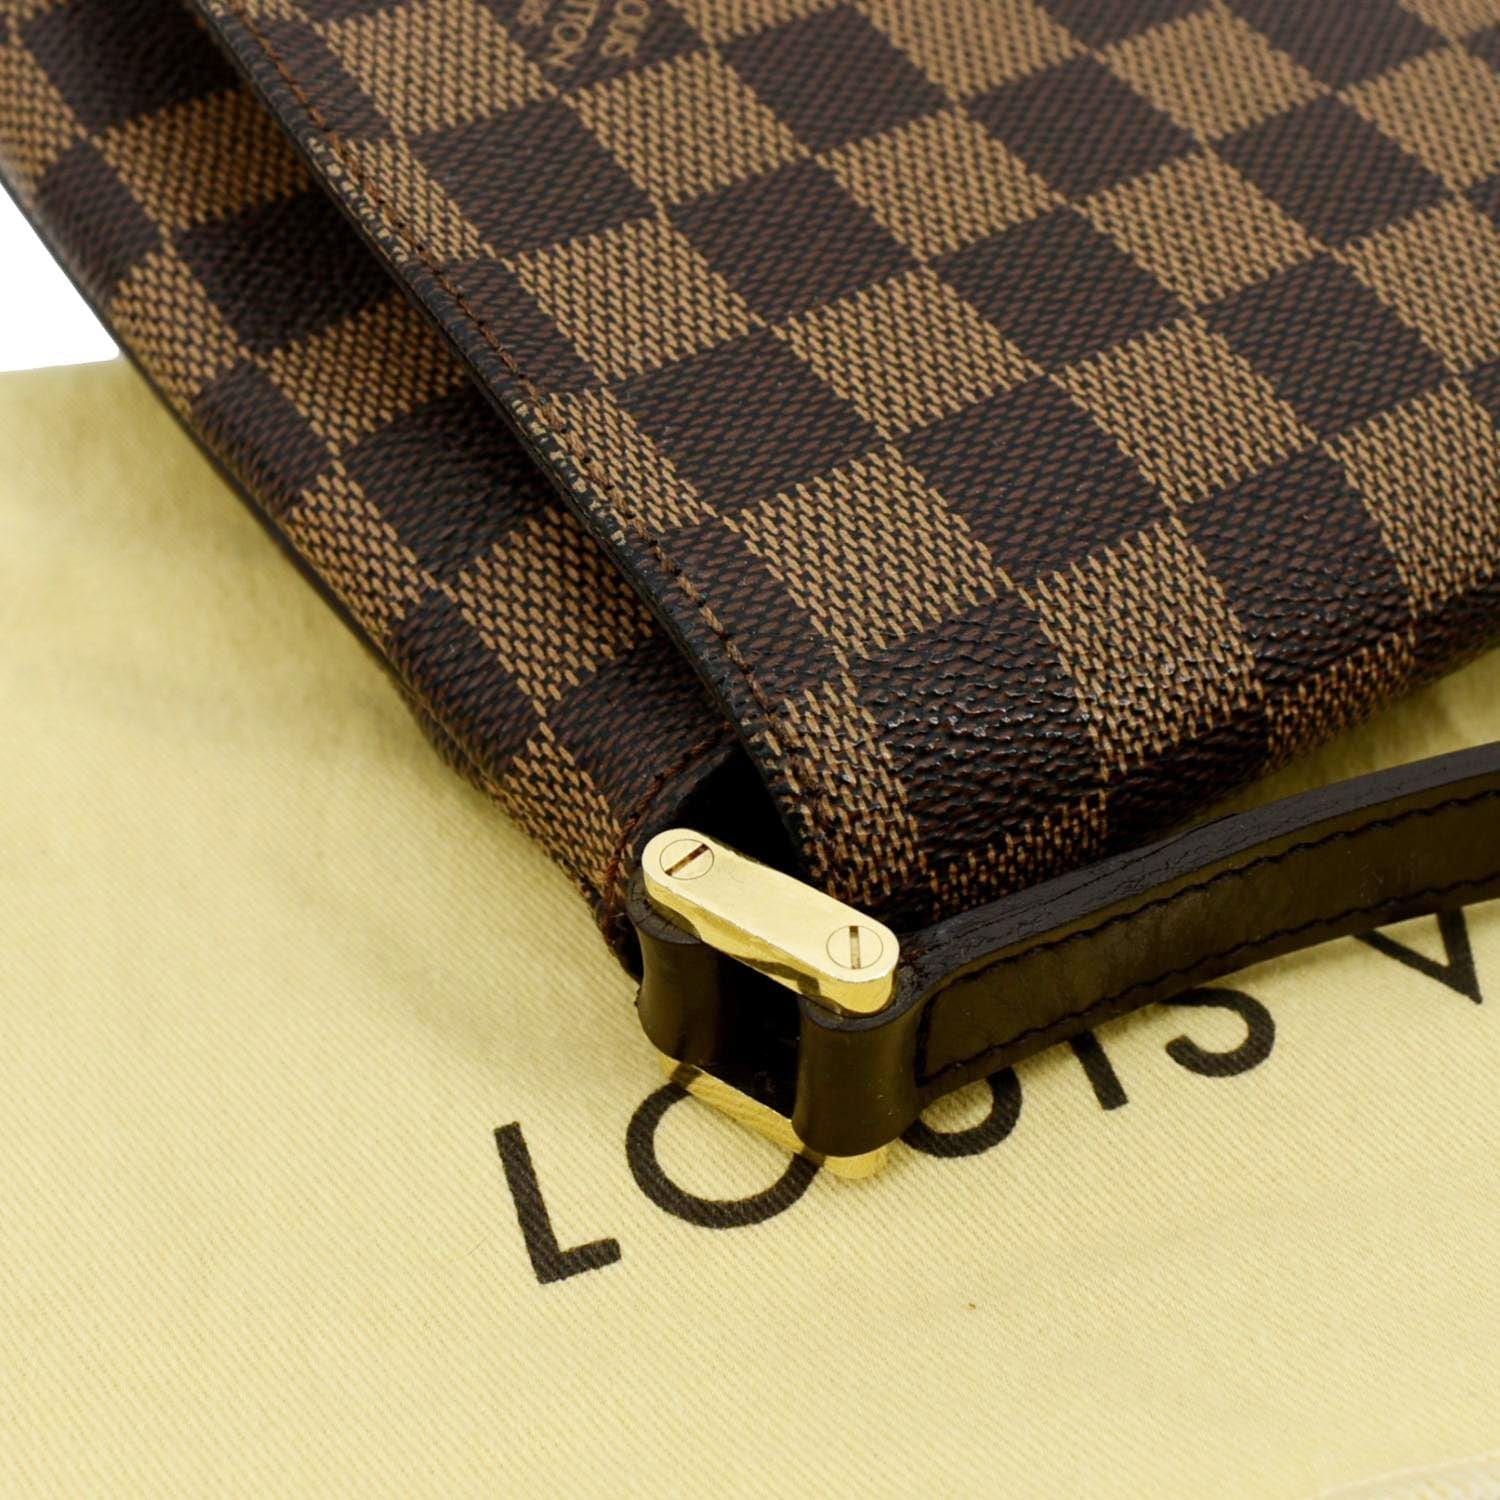 Authentic Louis Vuitton Musette Tango Vintage Leather 